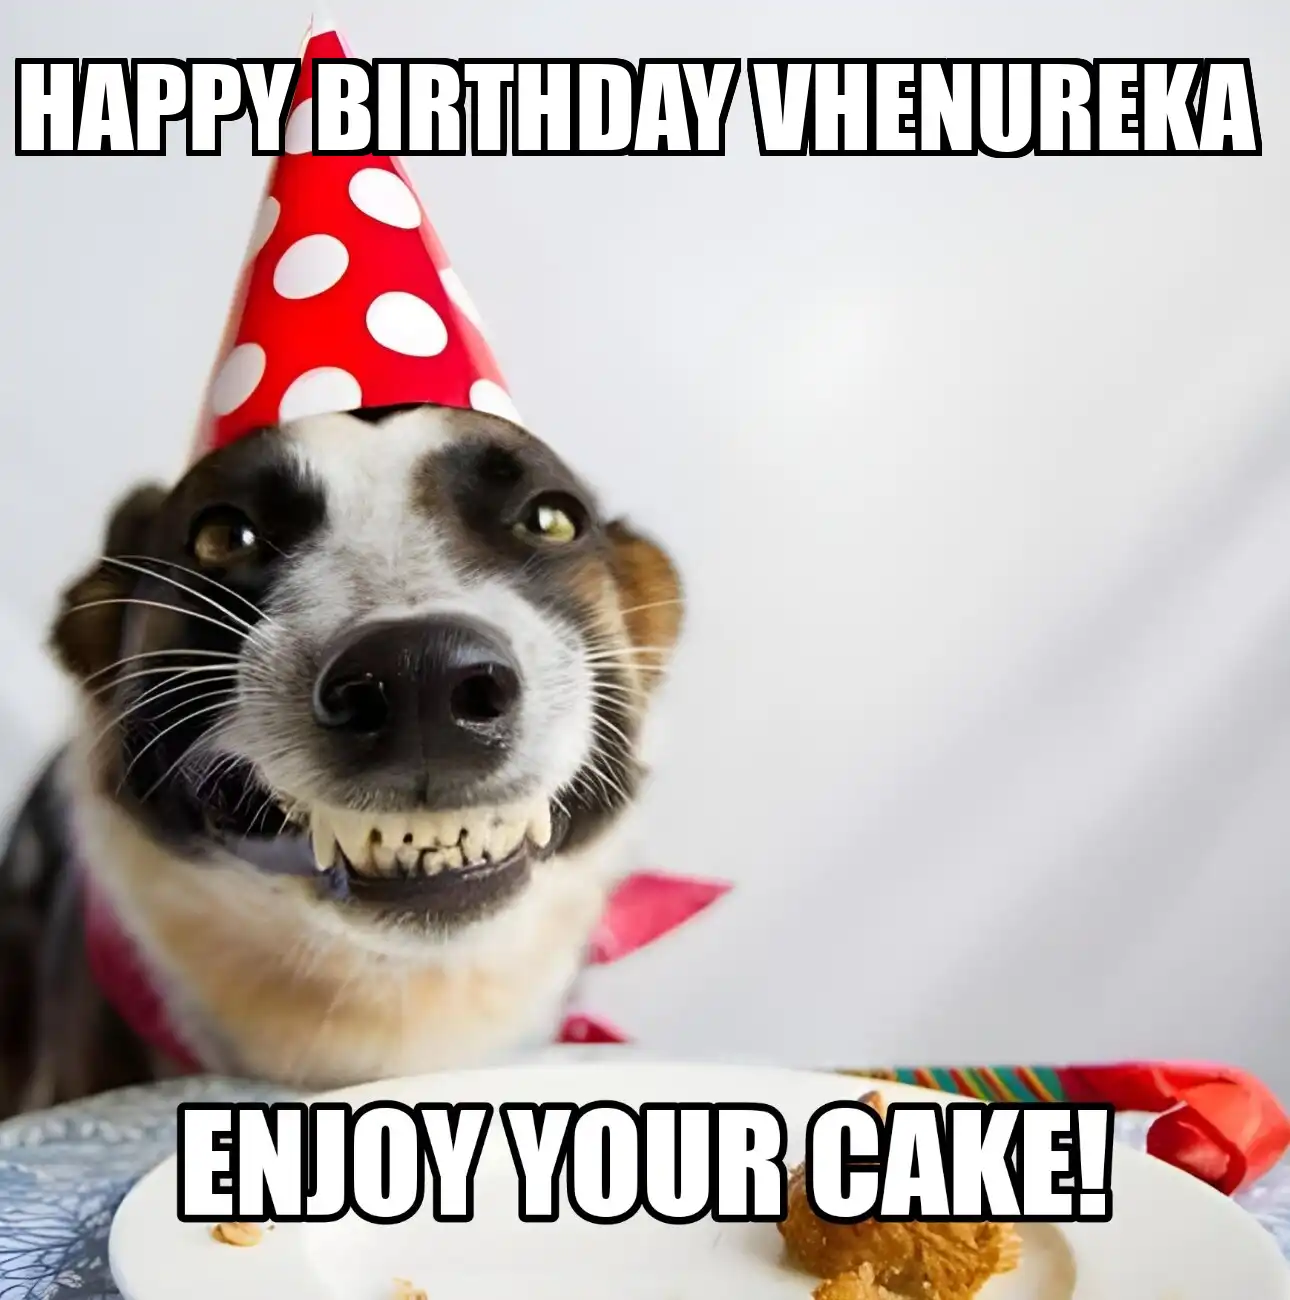 Happy Birthday Vhenureka Enjoy Your Cake Dog Meme